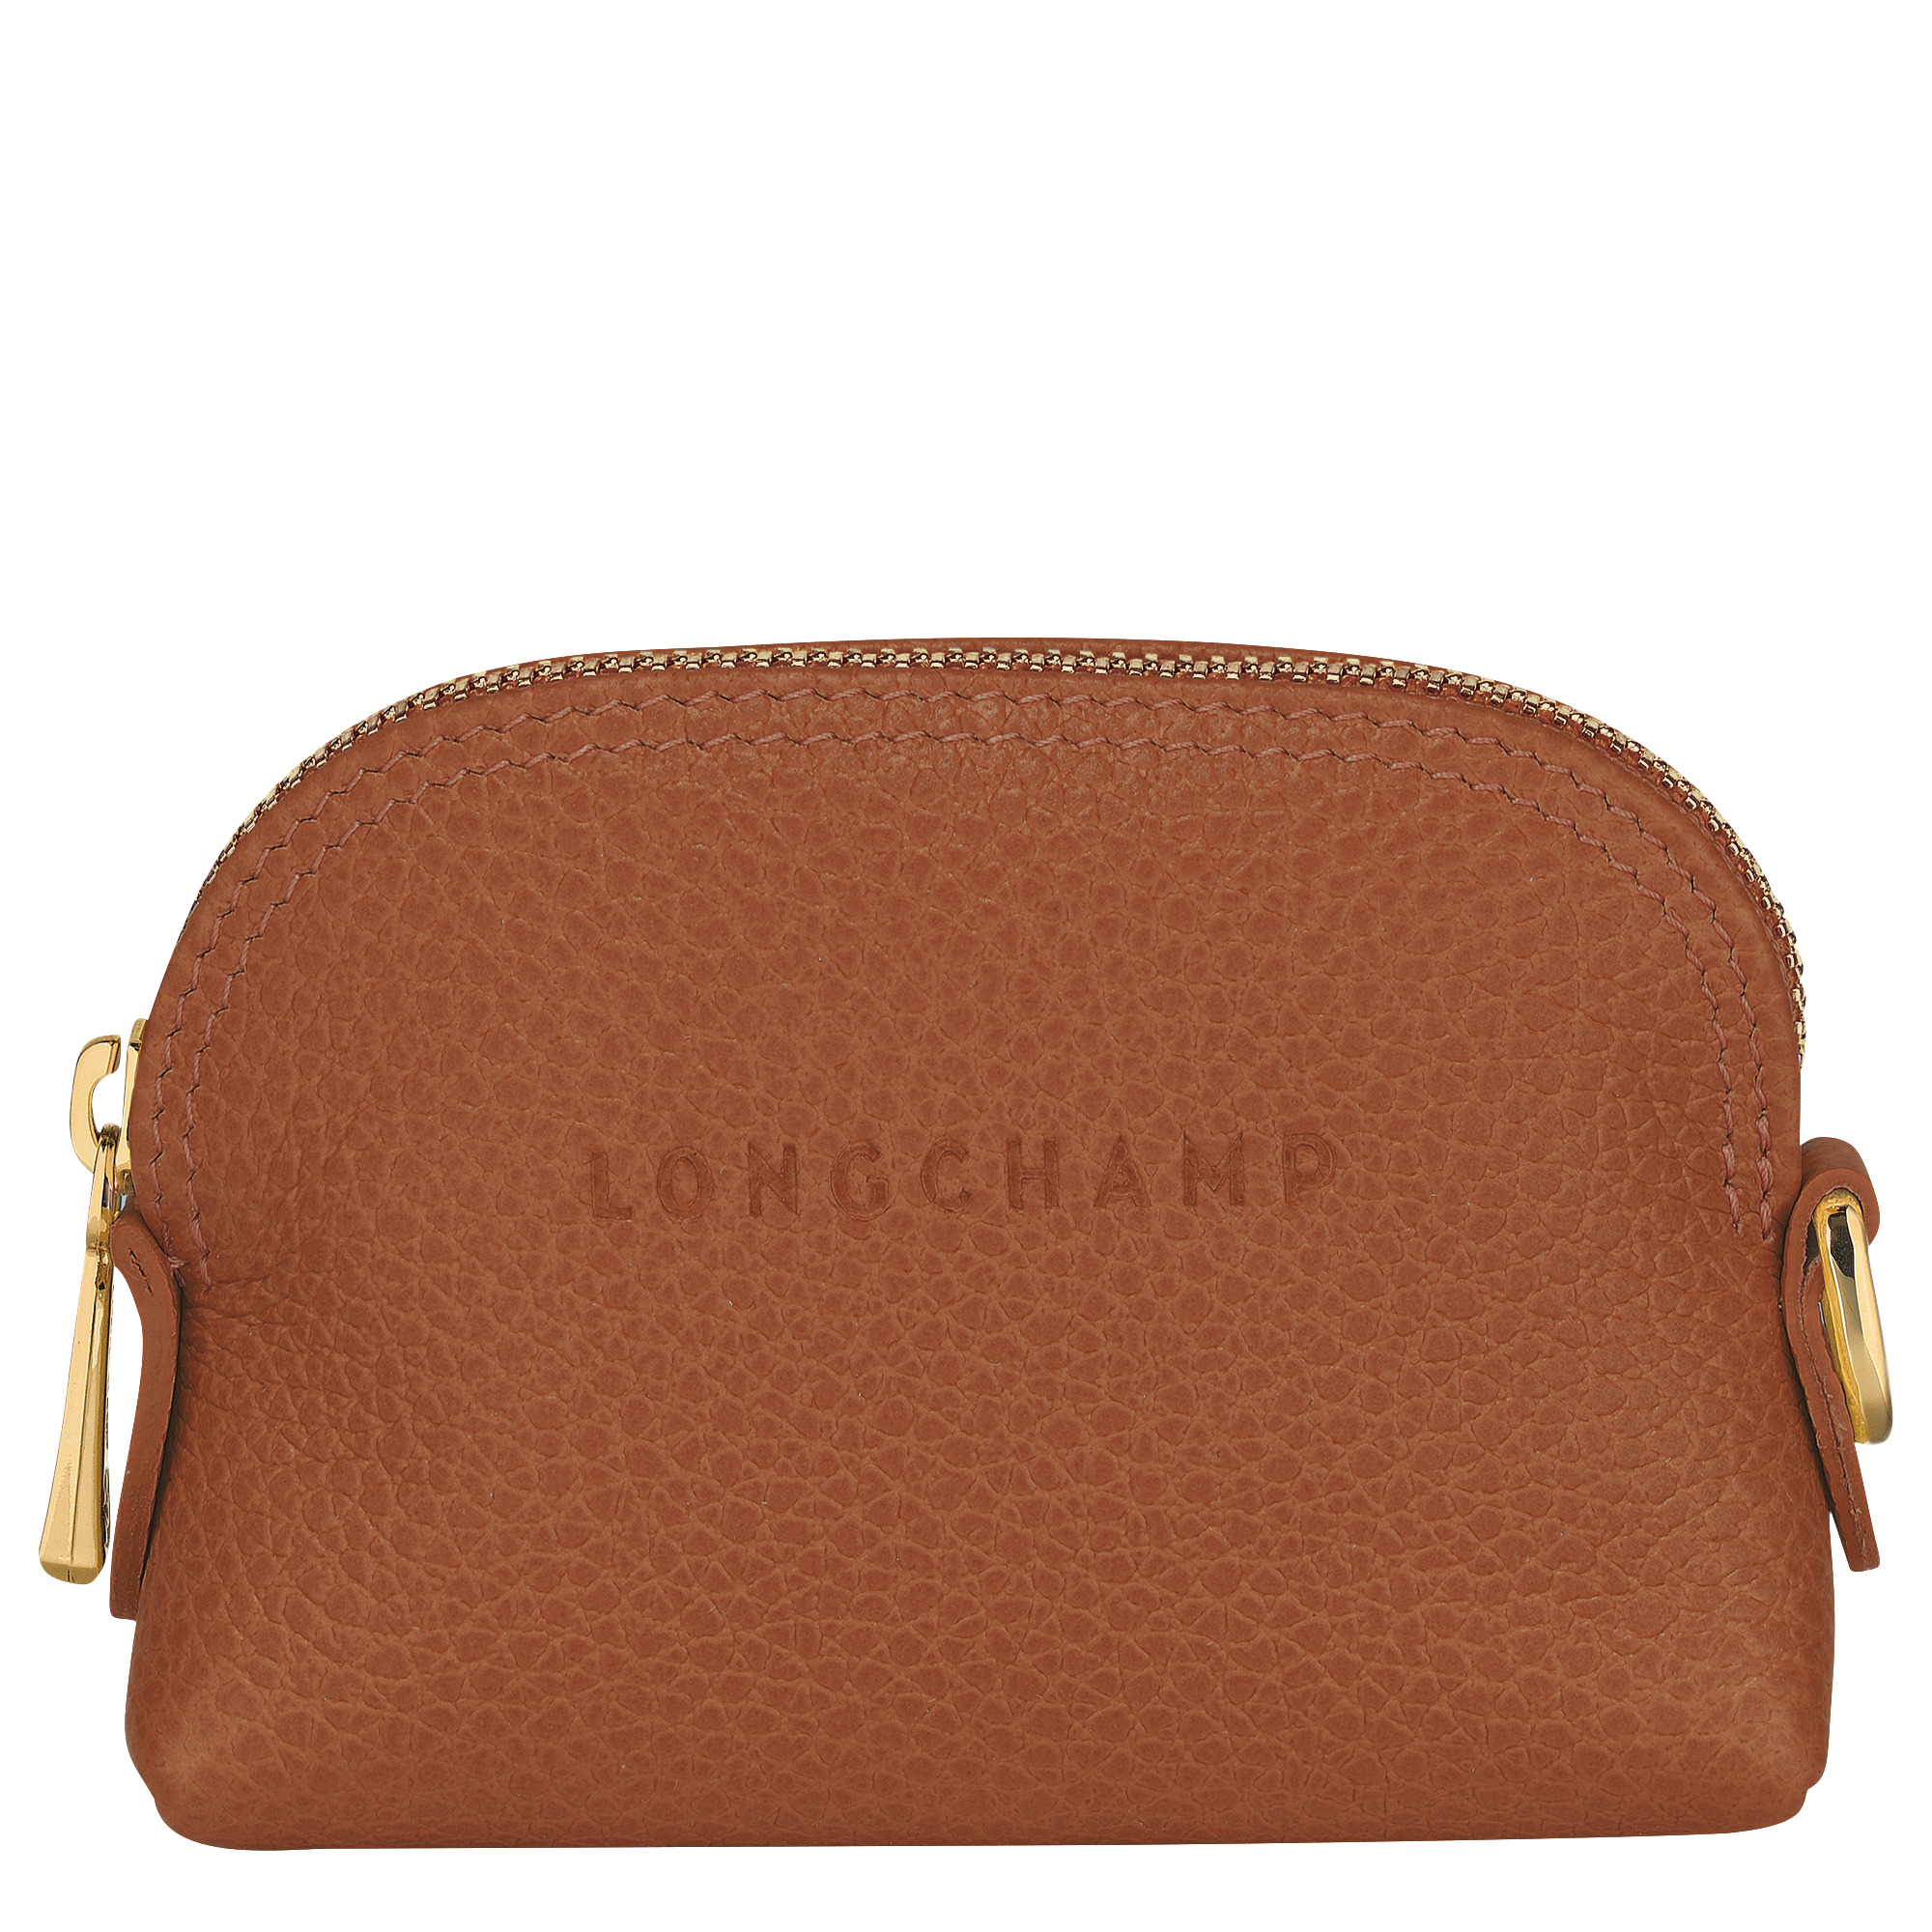 Le Foulonné Coin purse Caramel - Leather - 1